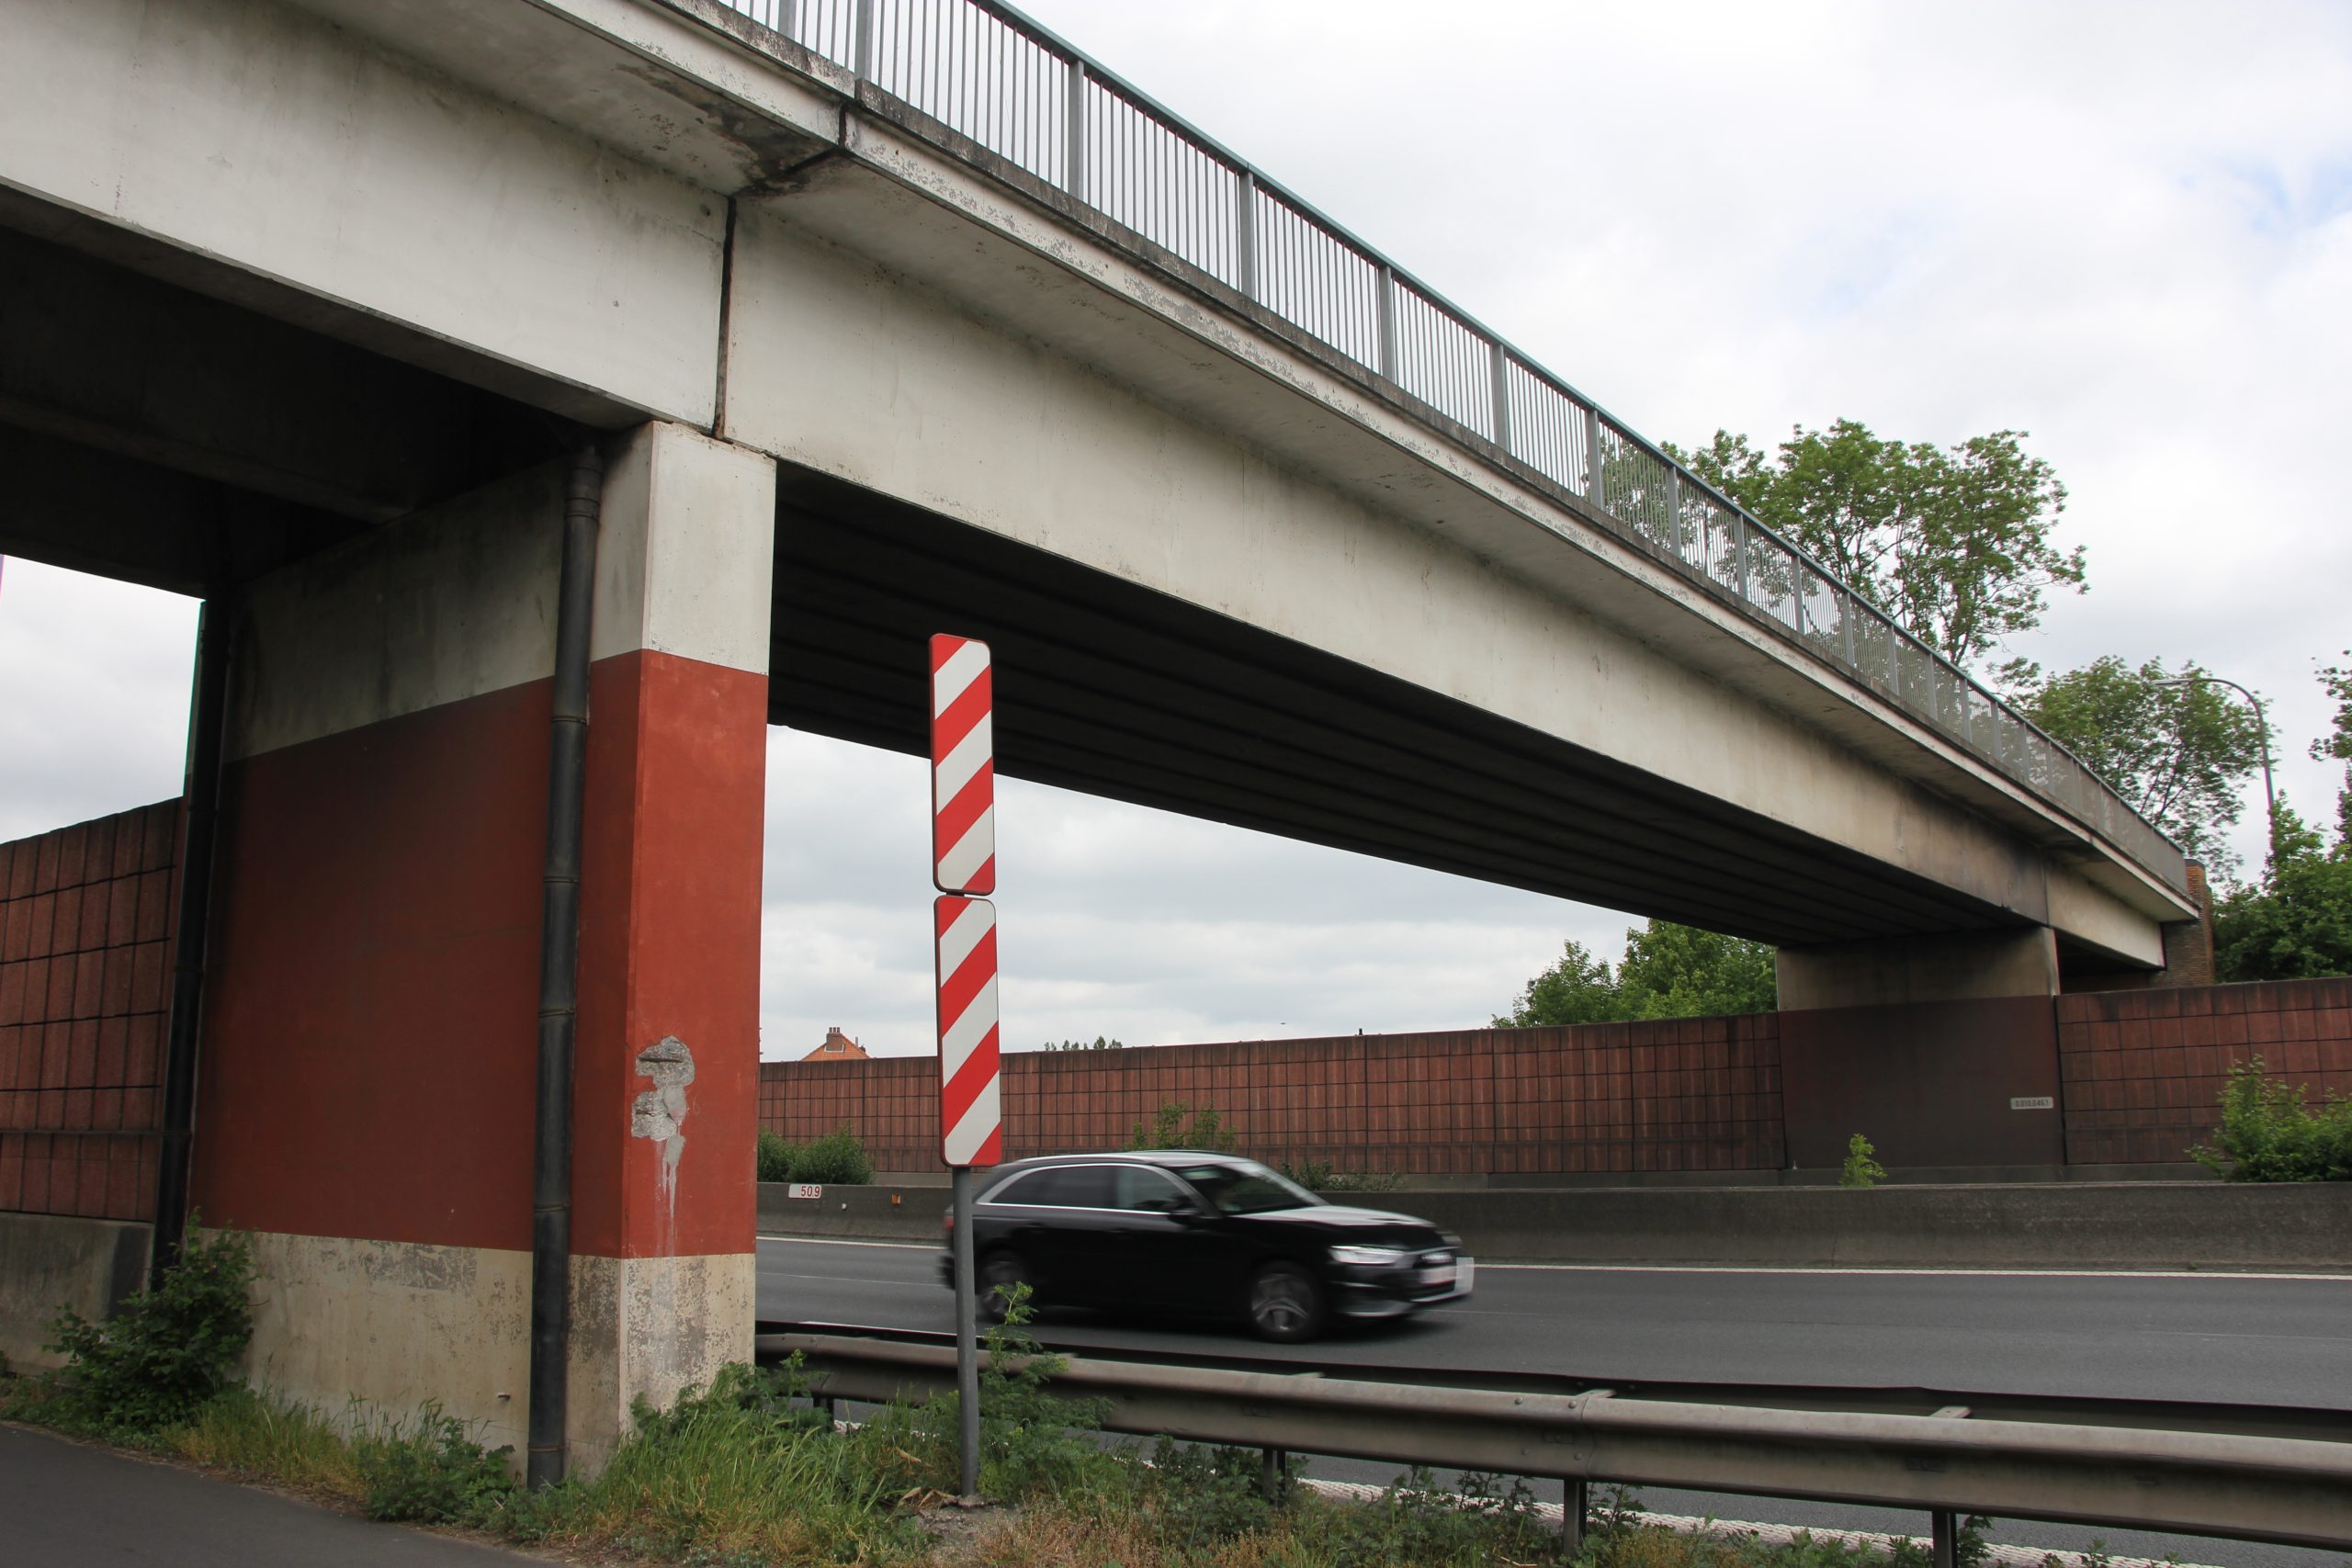 Vernieuwing van bruggen in Drongen en Nevele